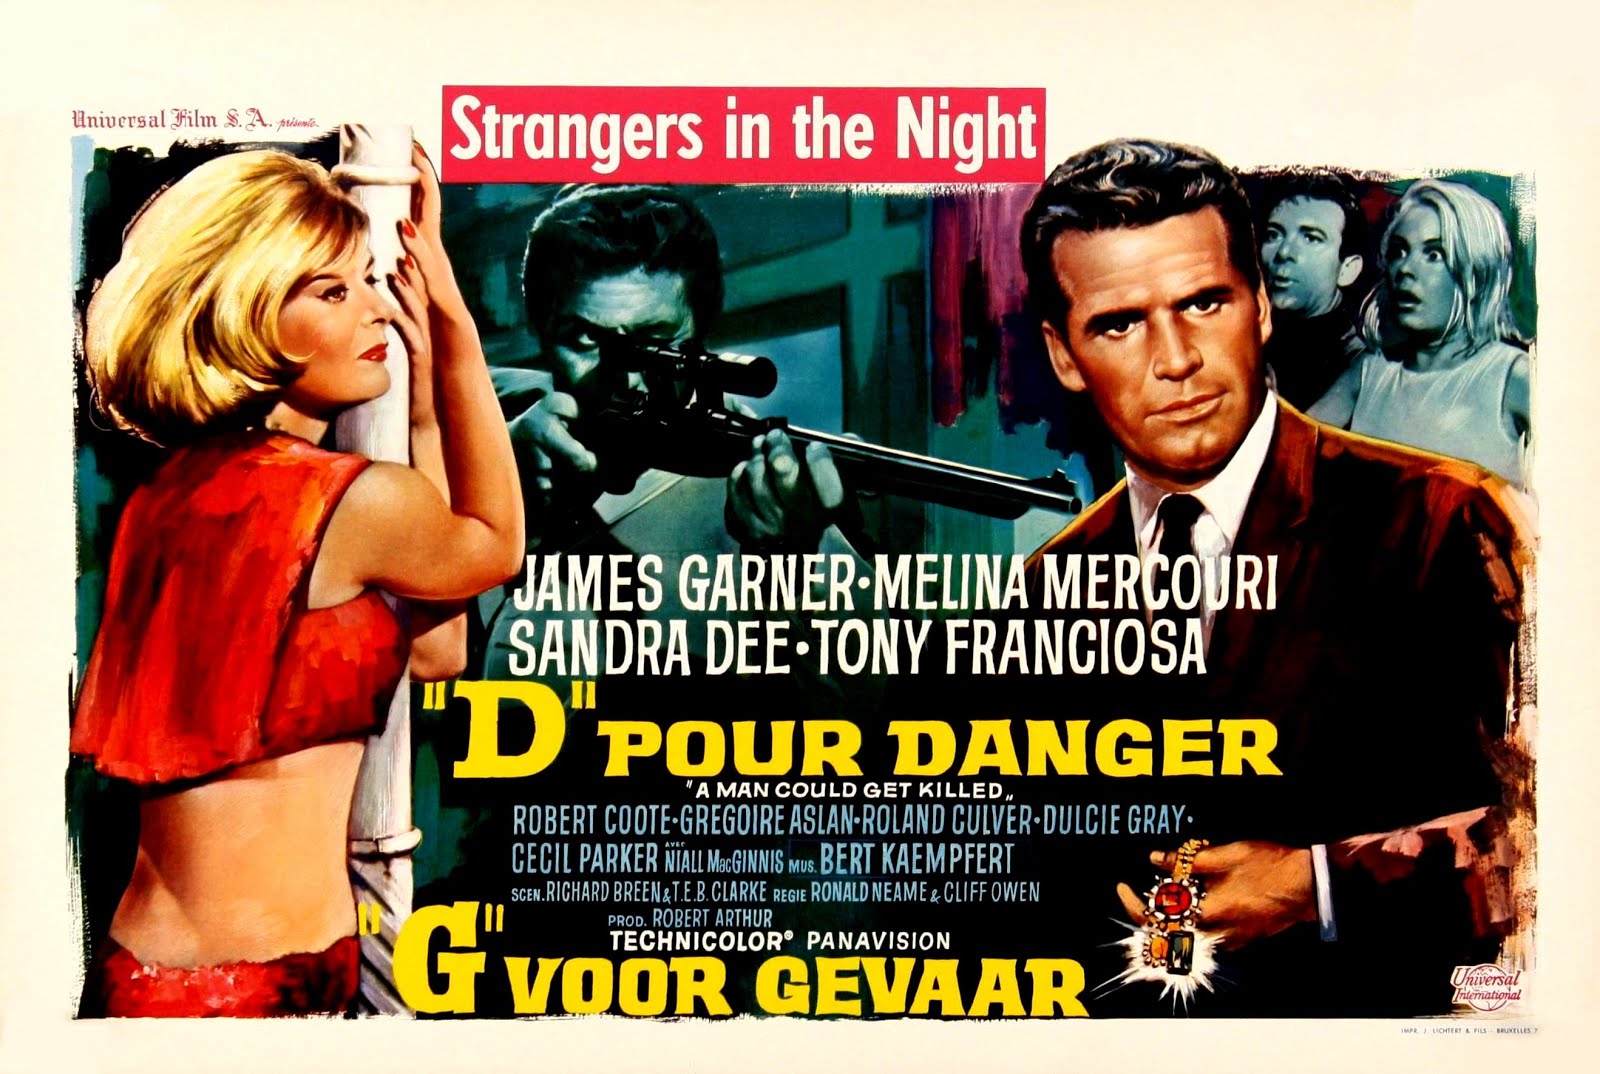 "D" pour danger (1965) Ronald Neame , Cliff Owen - A man could get killed (24.05.1965 / 1965)